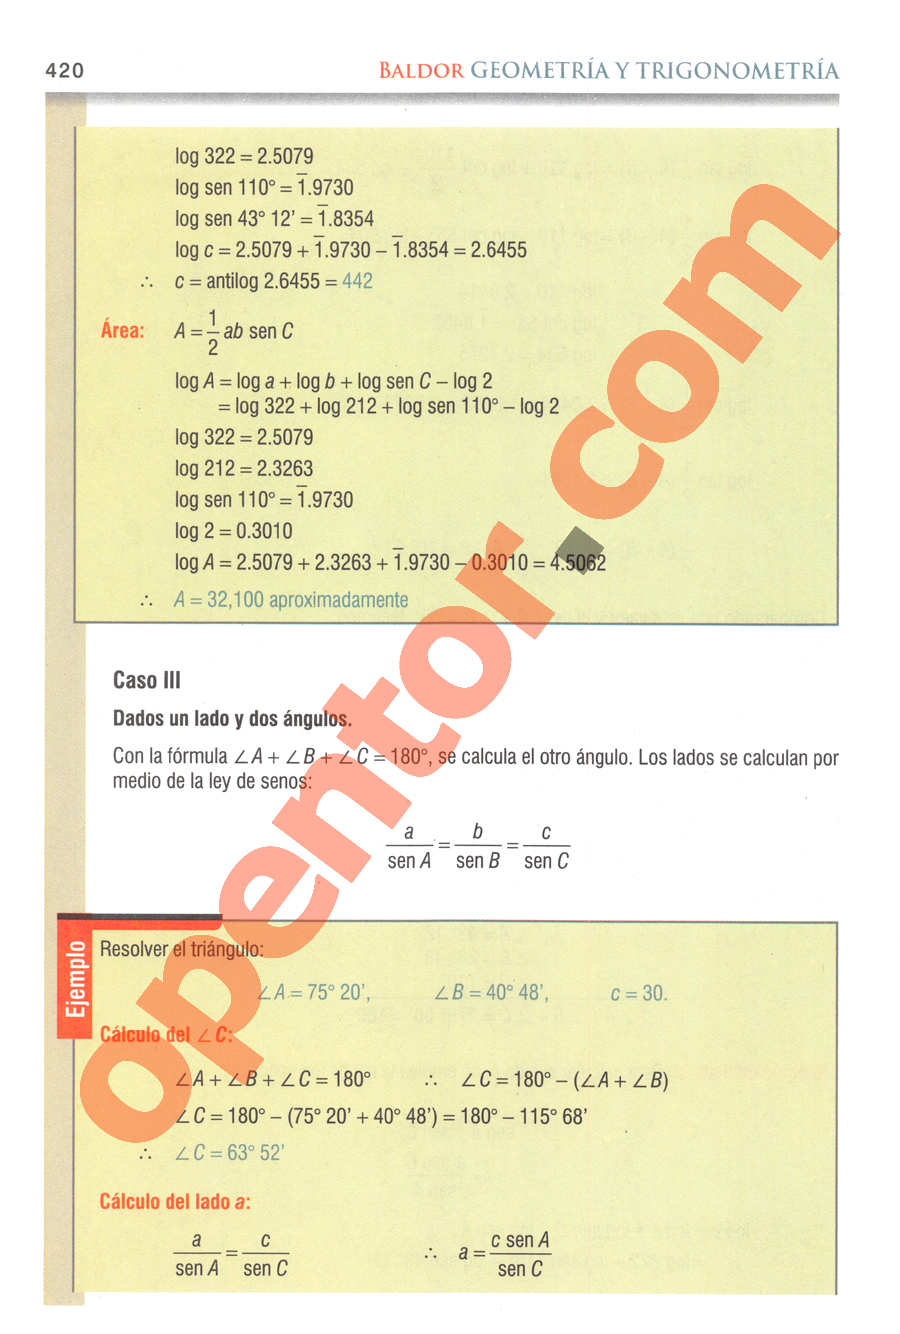 Geometría y Trigonometría de Baldor - Página 420